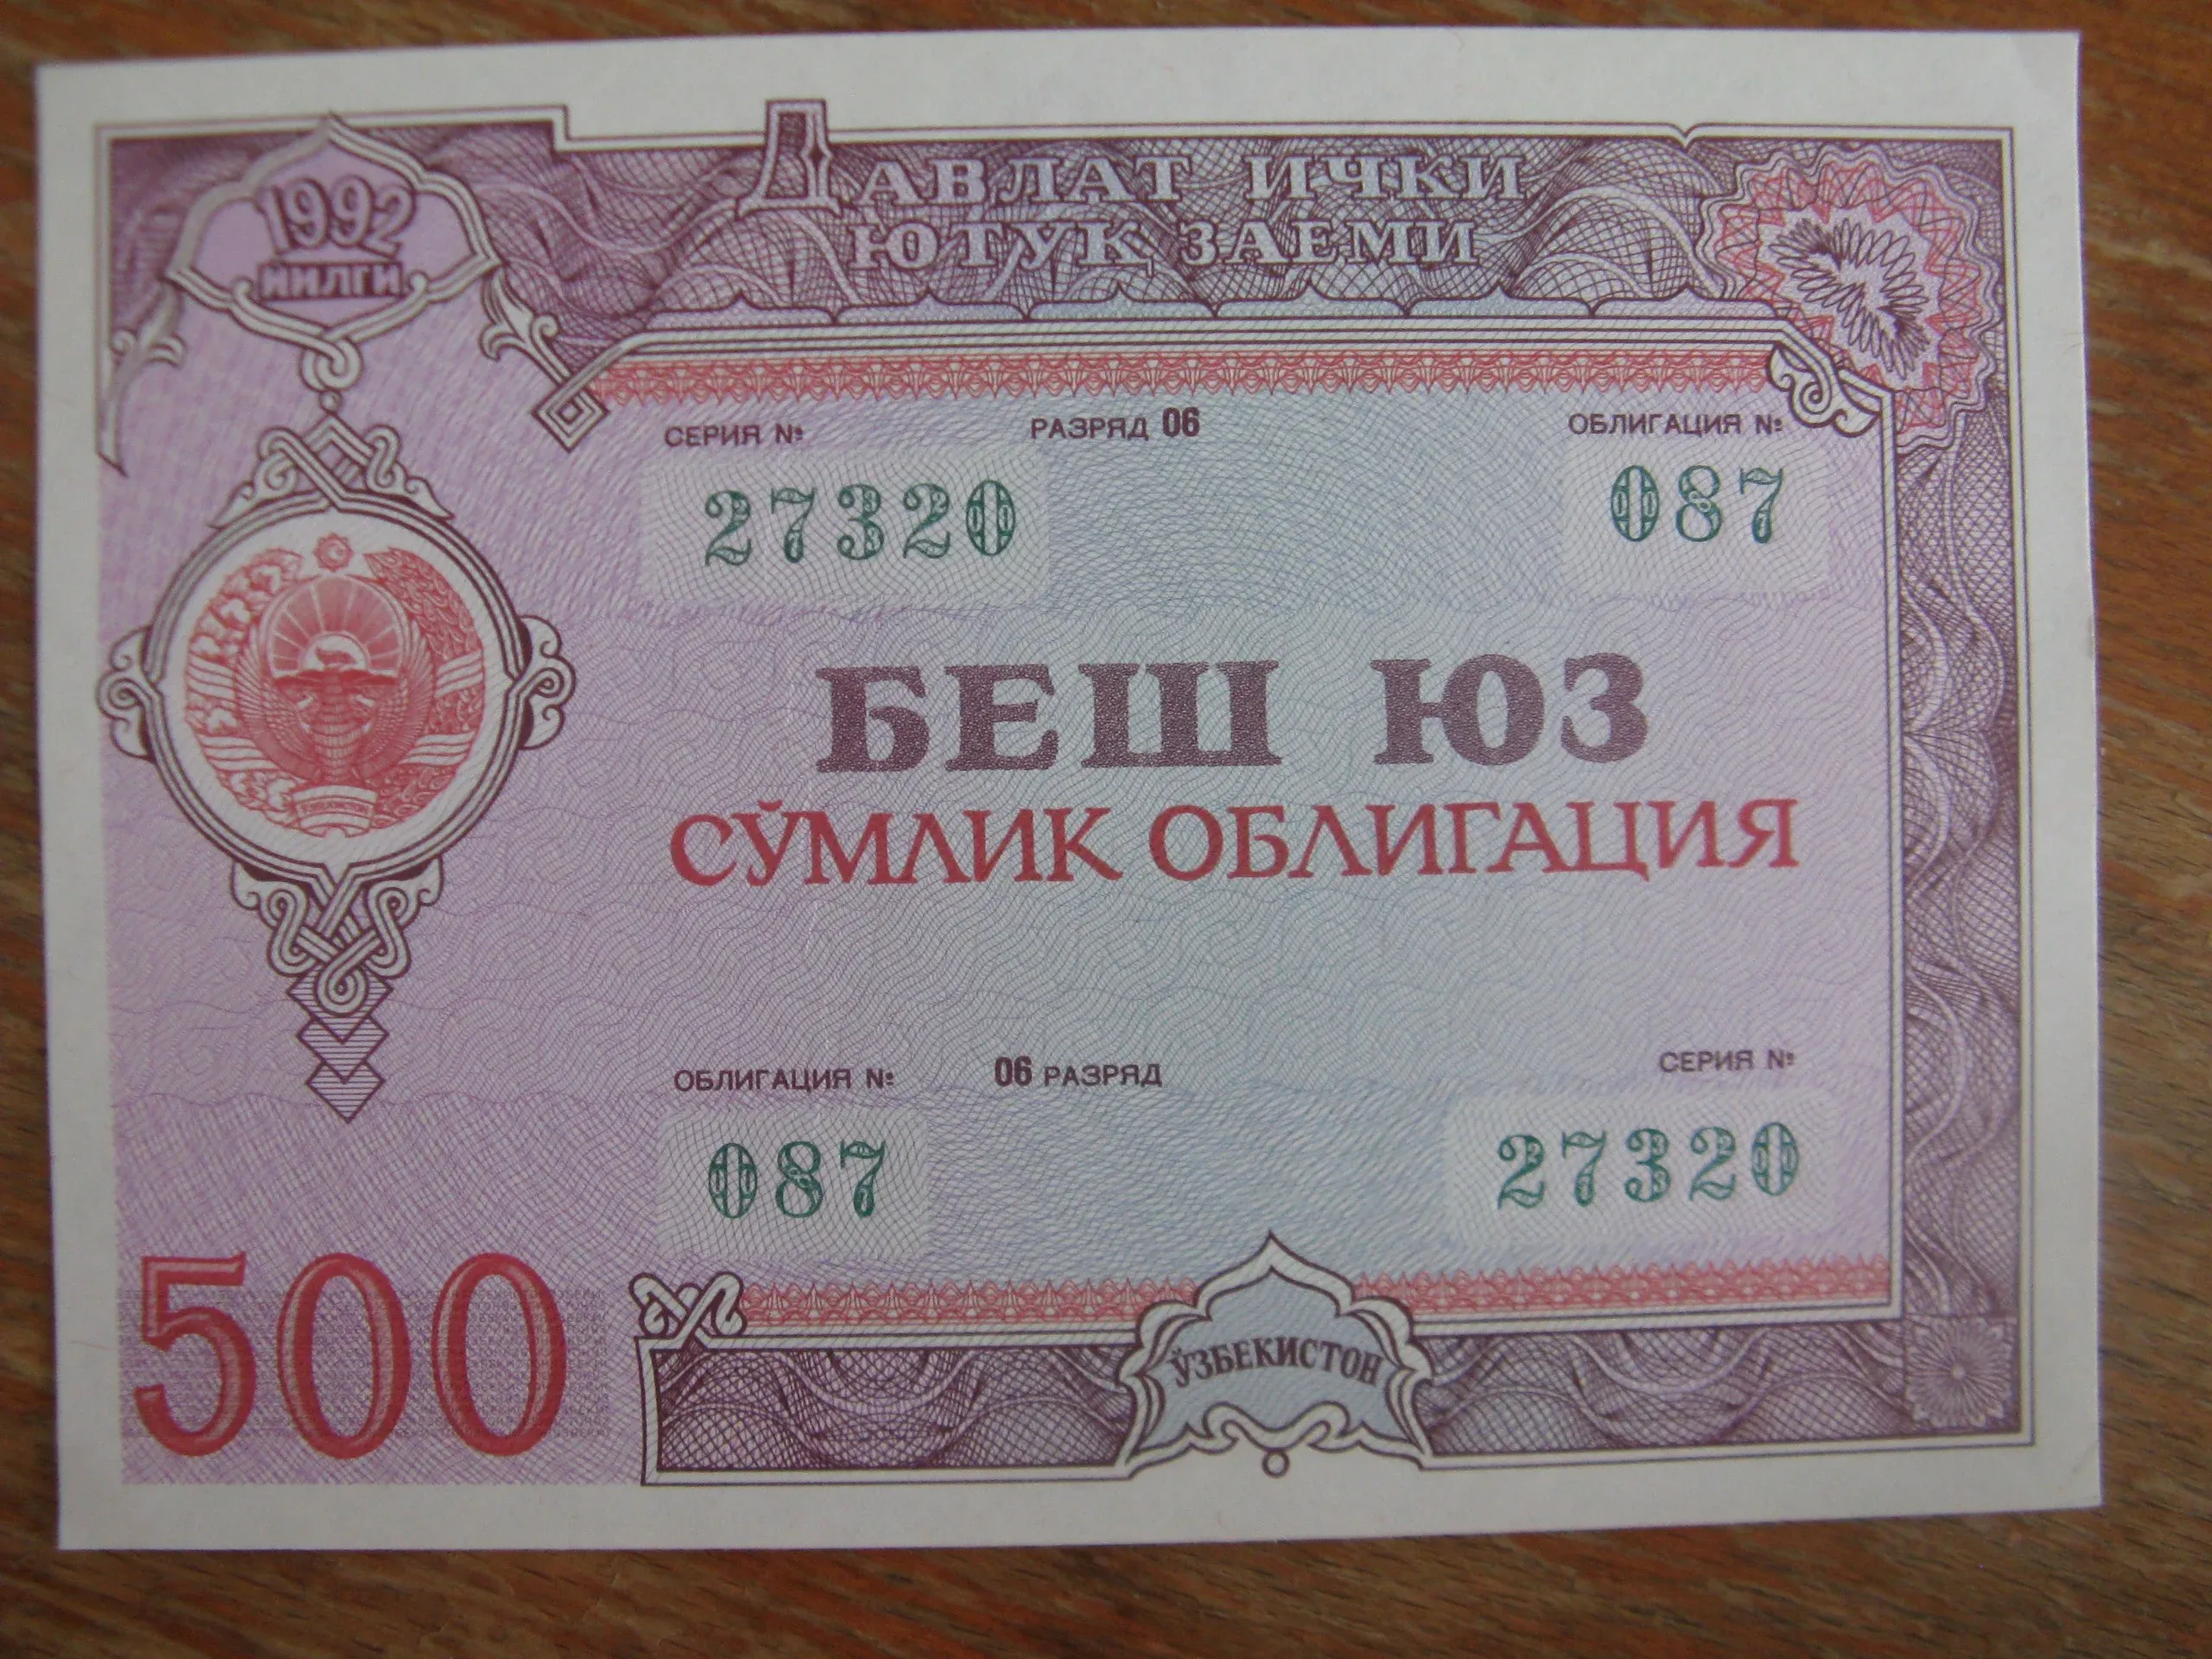 1 рубль сум узбекистан. 500 Сум Узбекистан. Облигации государственного займа 1992 года. 500 Сум в рублях. Узбекистан 10 сум 1992 года.